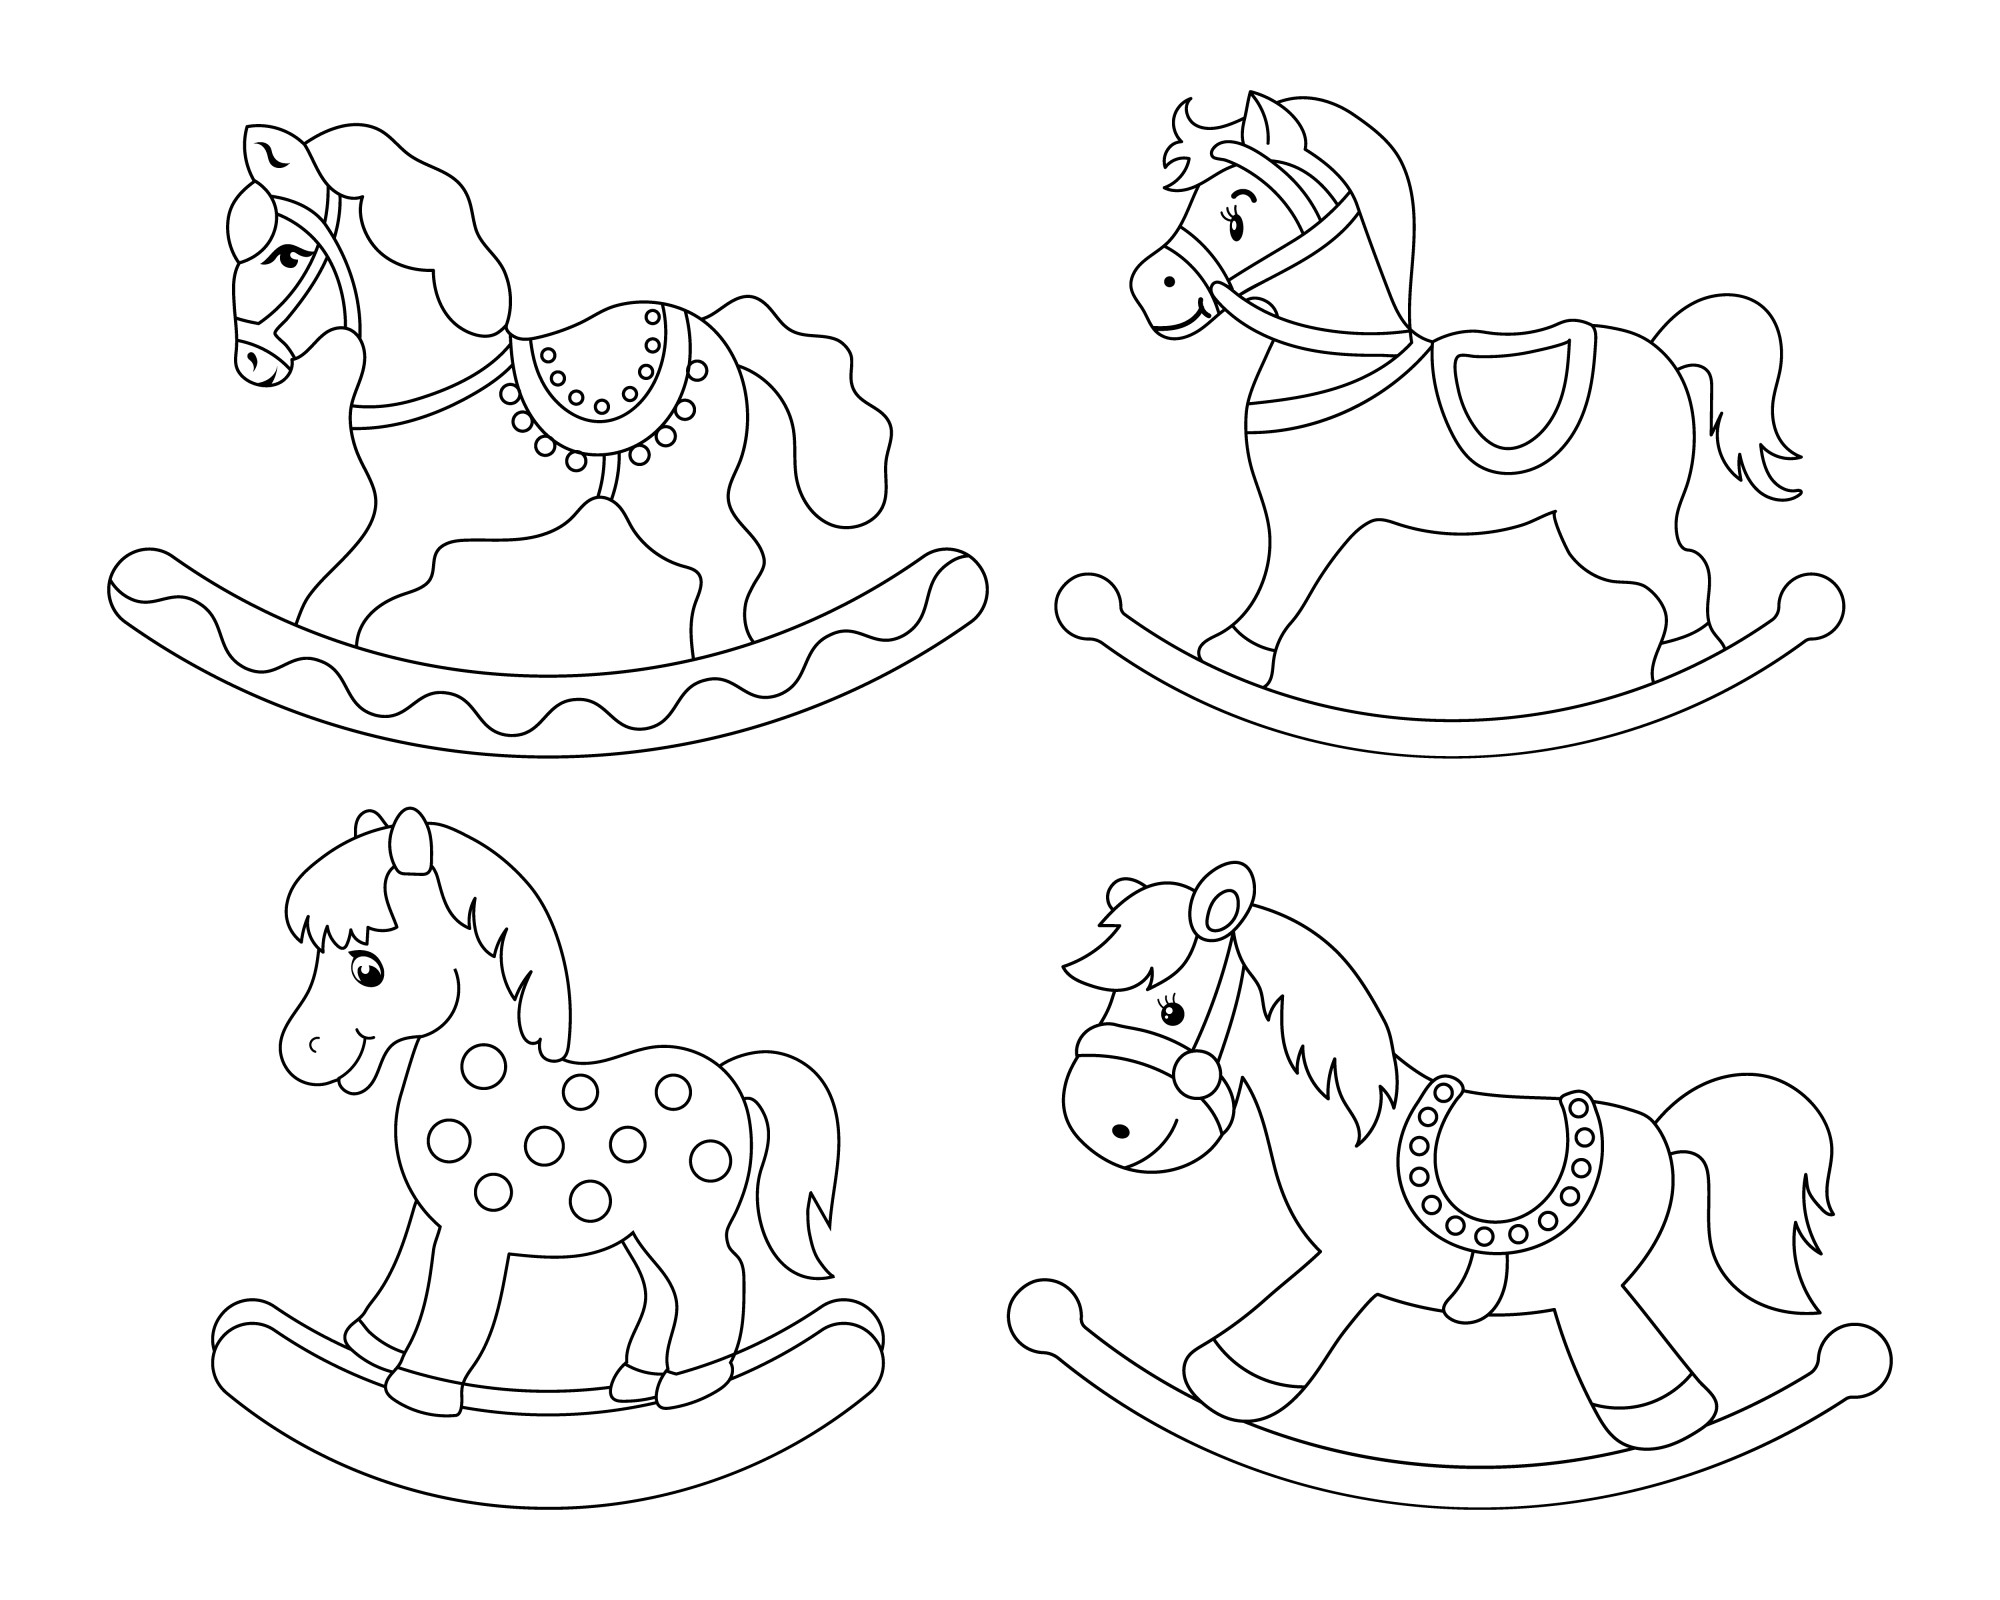 Раскраска для детей: четыре игрушки лошадки-качалки